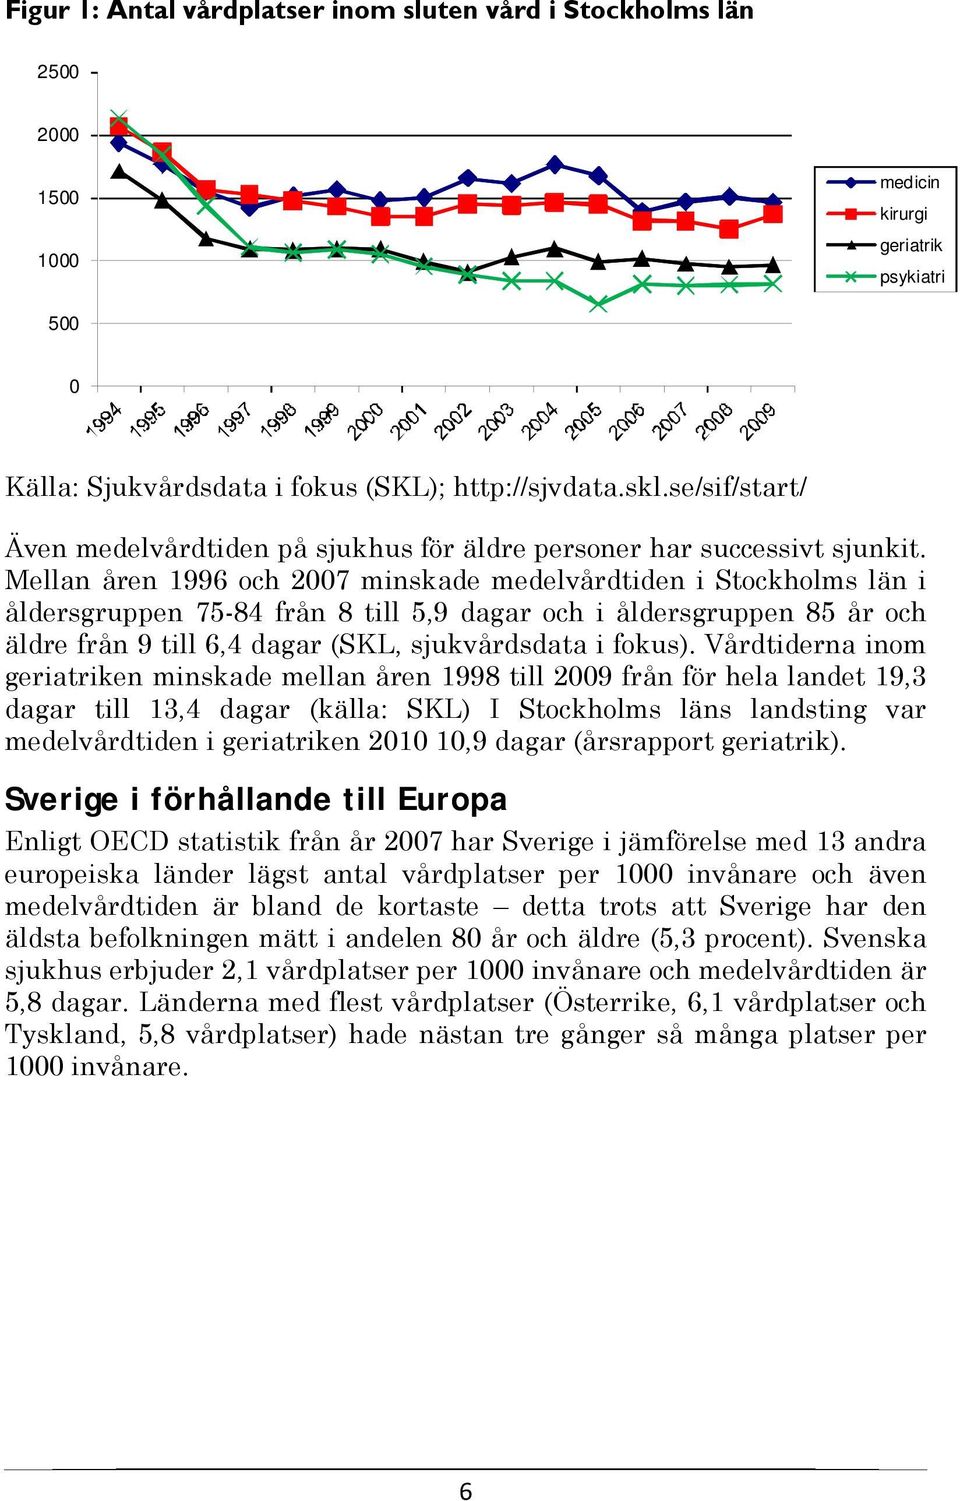 Mellan åren 1996 och 2007 minskade medelvårdtiden i Stockholms län i åldersgruppen 75-84 från 8 till 5,9 dagar och i åldersgruppen 85 år och äldre från 9 till 6,4 dagar (SKL, sjukvårdsdata i fokus).